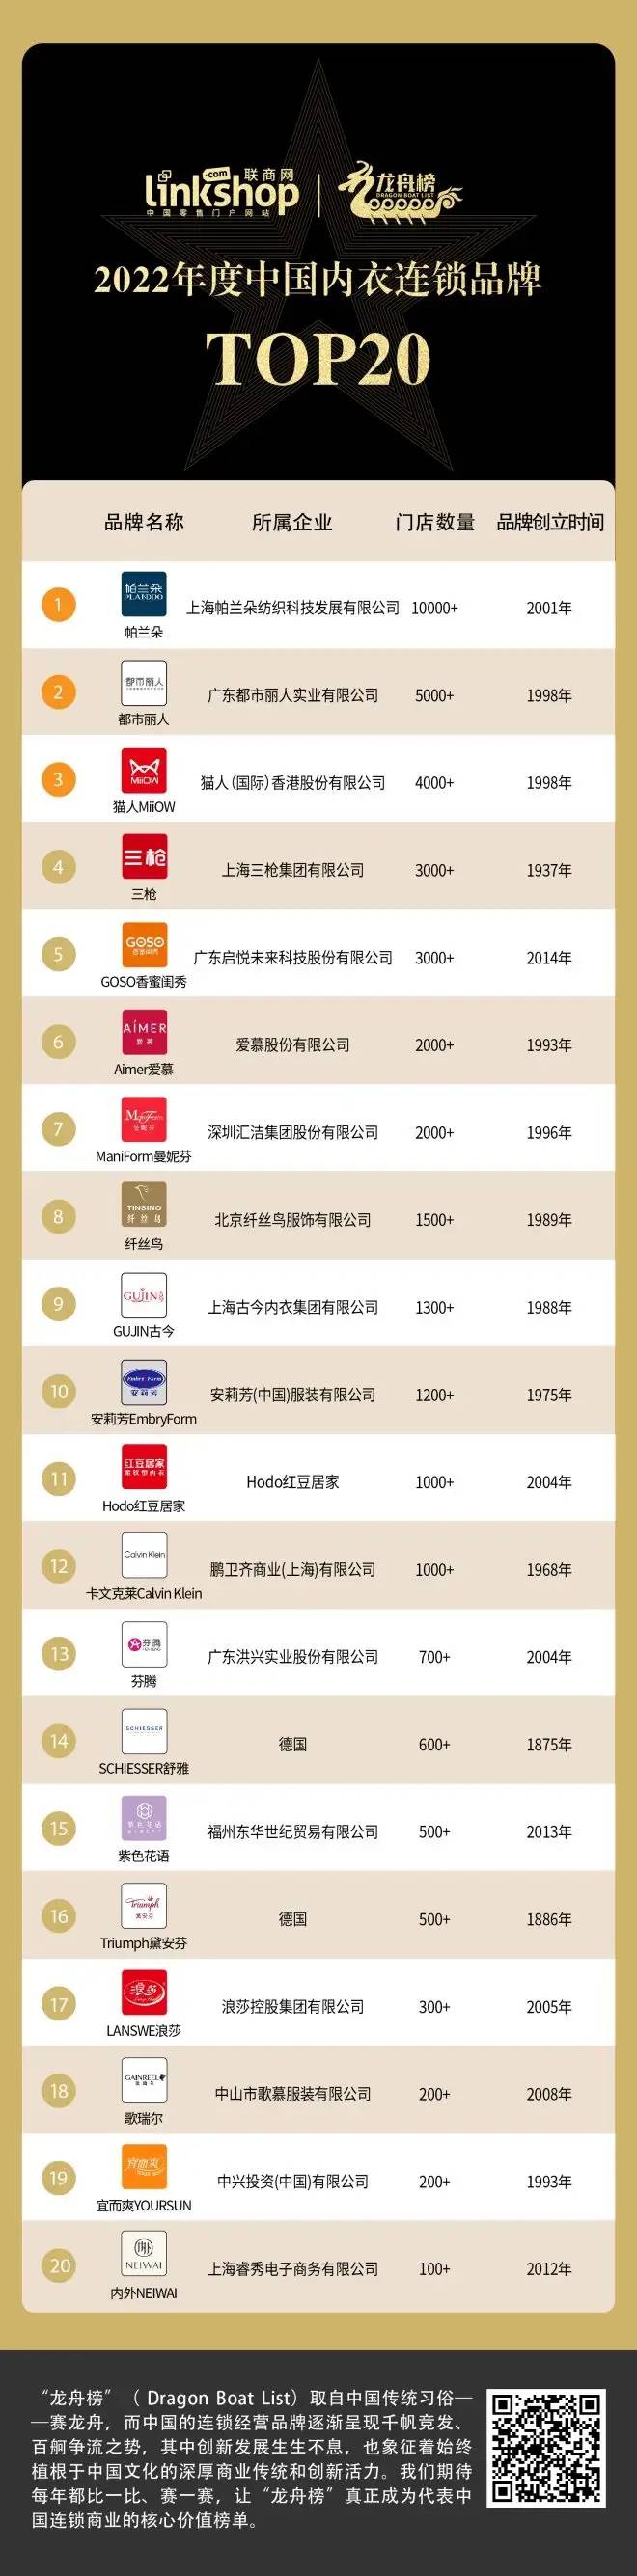 2022年度中国内衣连锁品牌TOP20